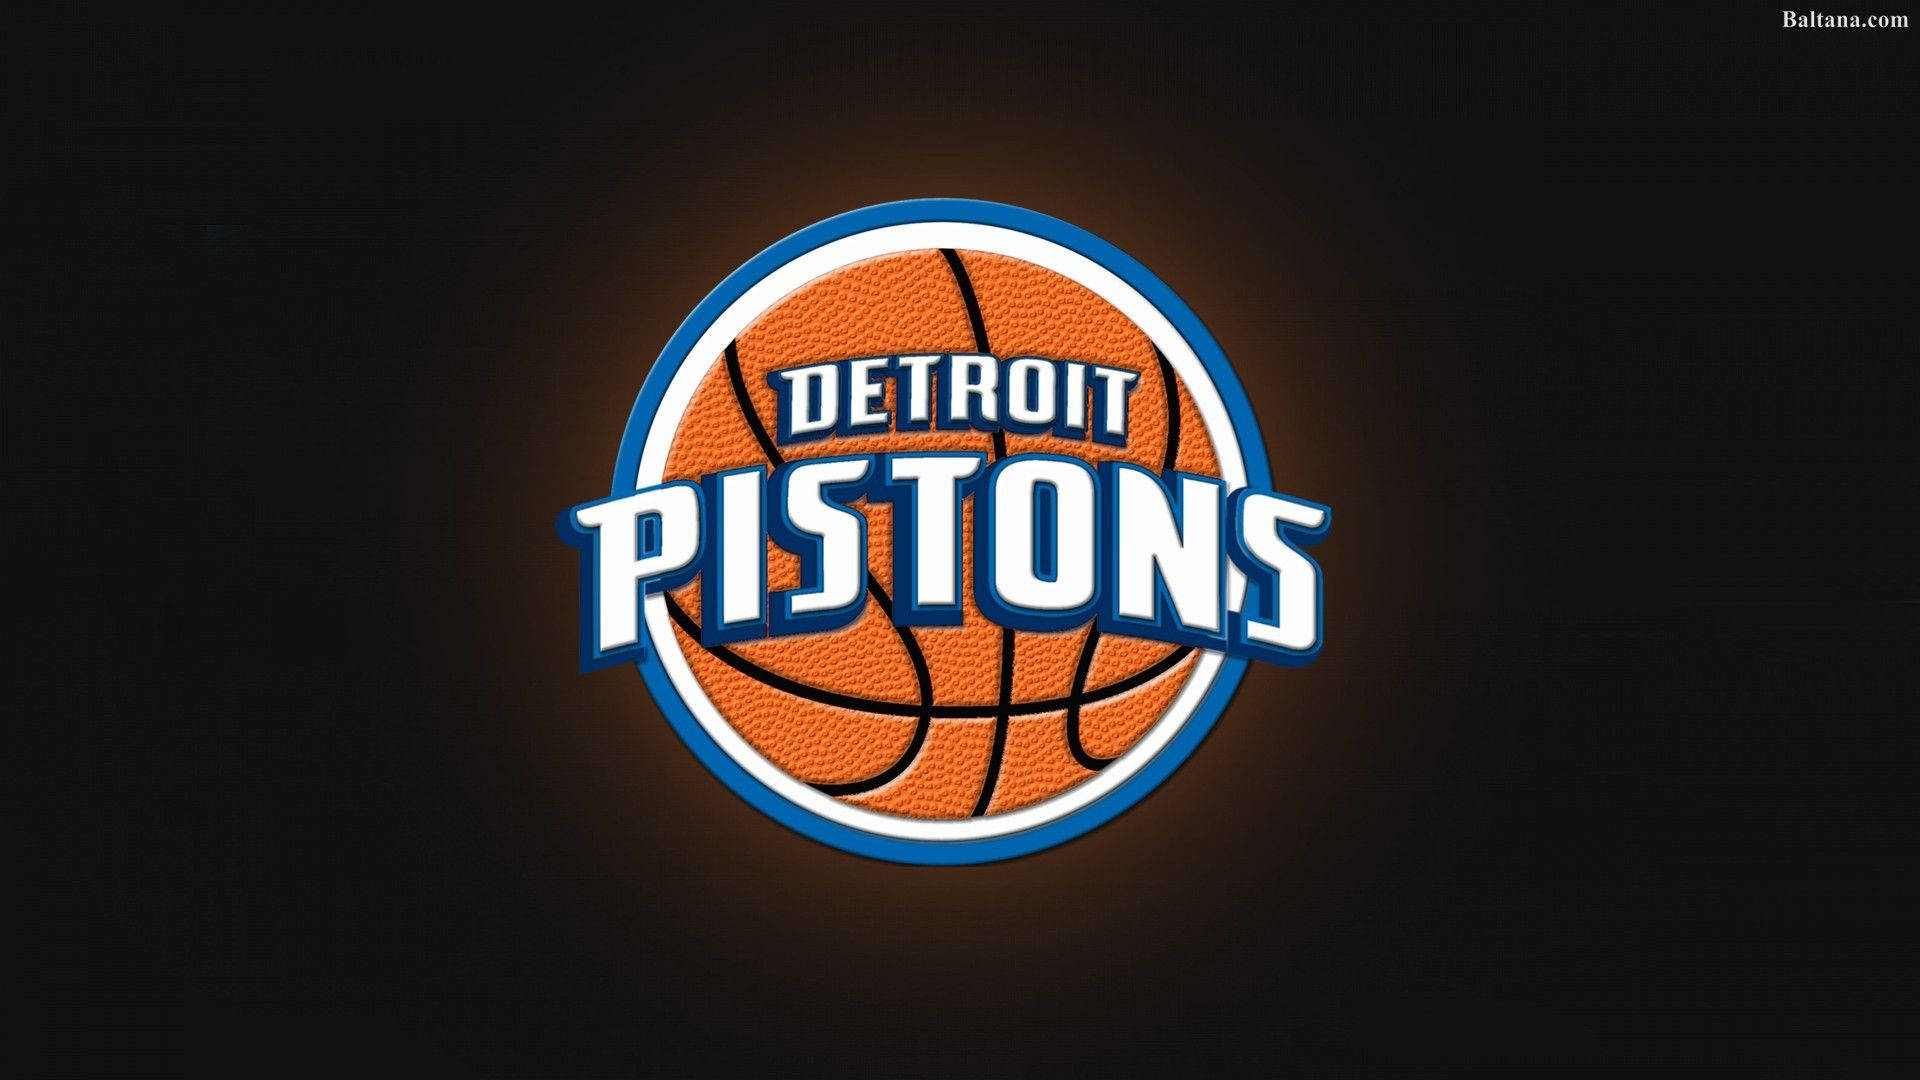 Detroit Pistons Detailed Basketball Illustration